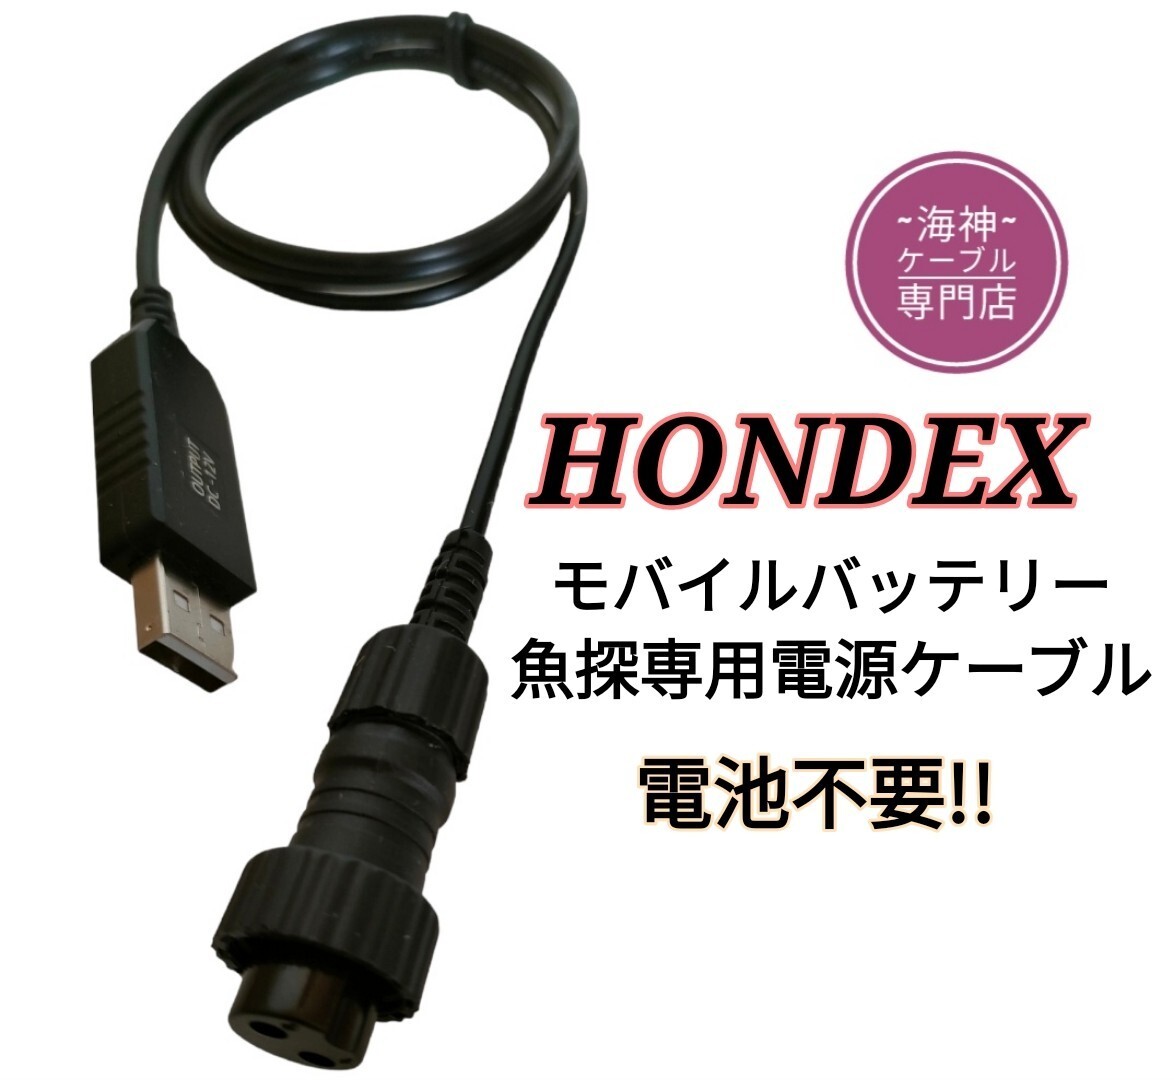 モバイルバッテリーでホンデックス製(HONDEX)魚探を動かす為の電源ケーブル(コード) 乾電池不要 ワカサギ釣りにも大活躍の画像1